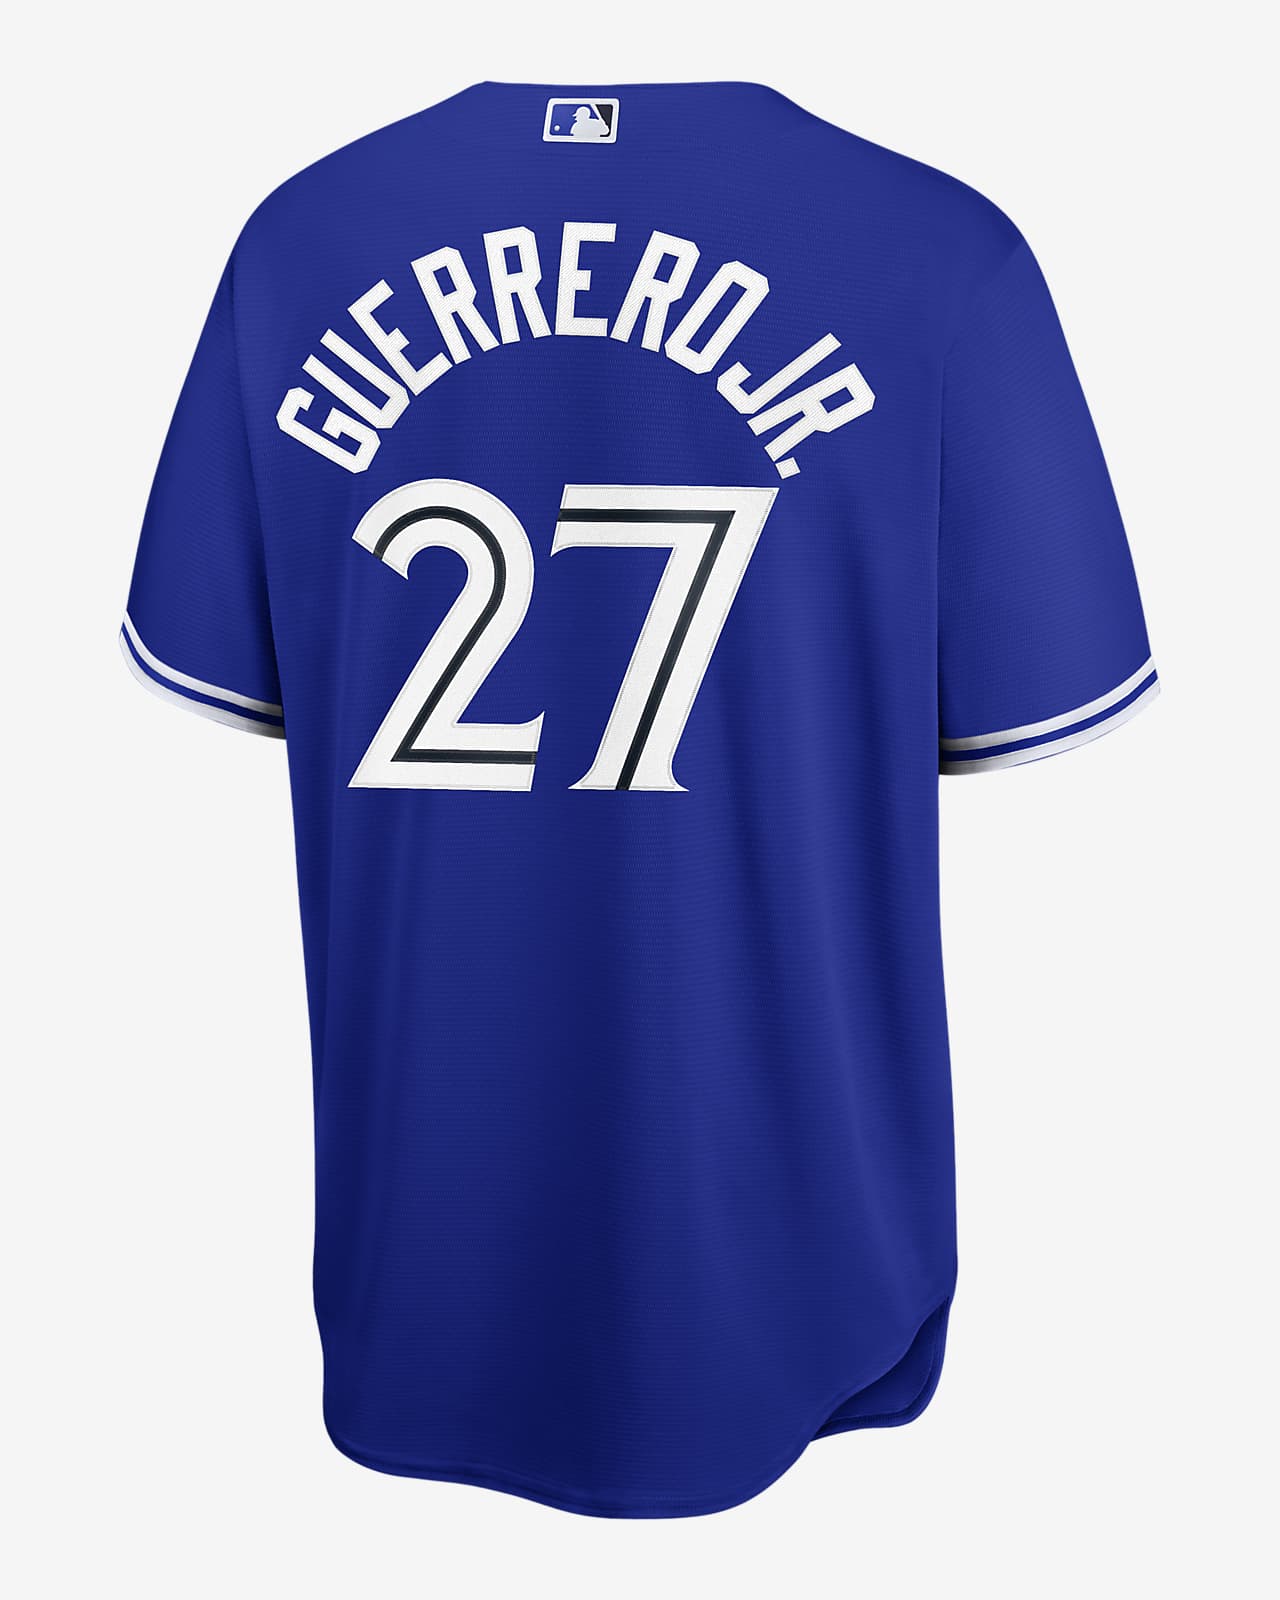 MLB Toronto Blue Jays (Vladimir Guerrero) Men's Replica Baseball Jersey ...